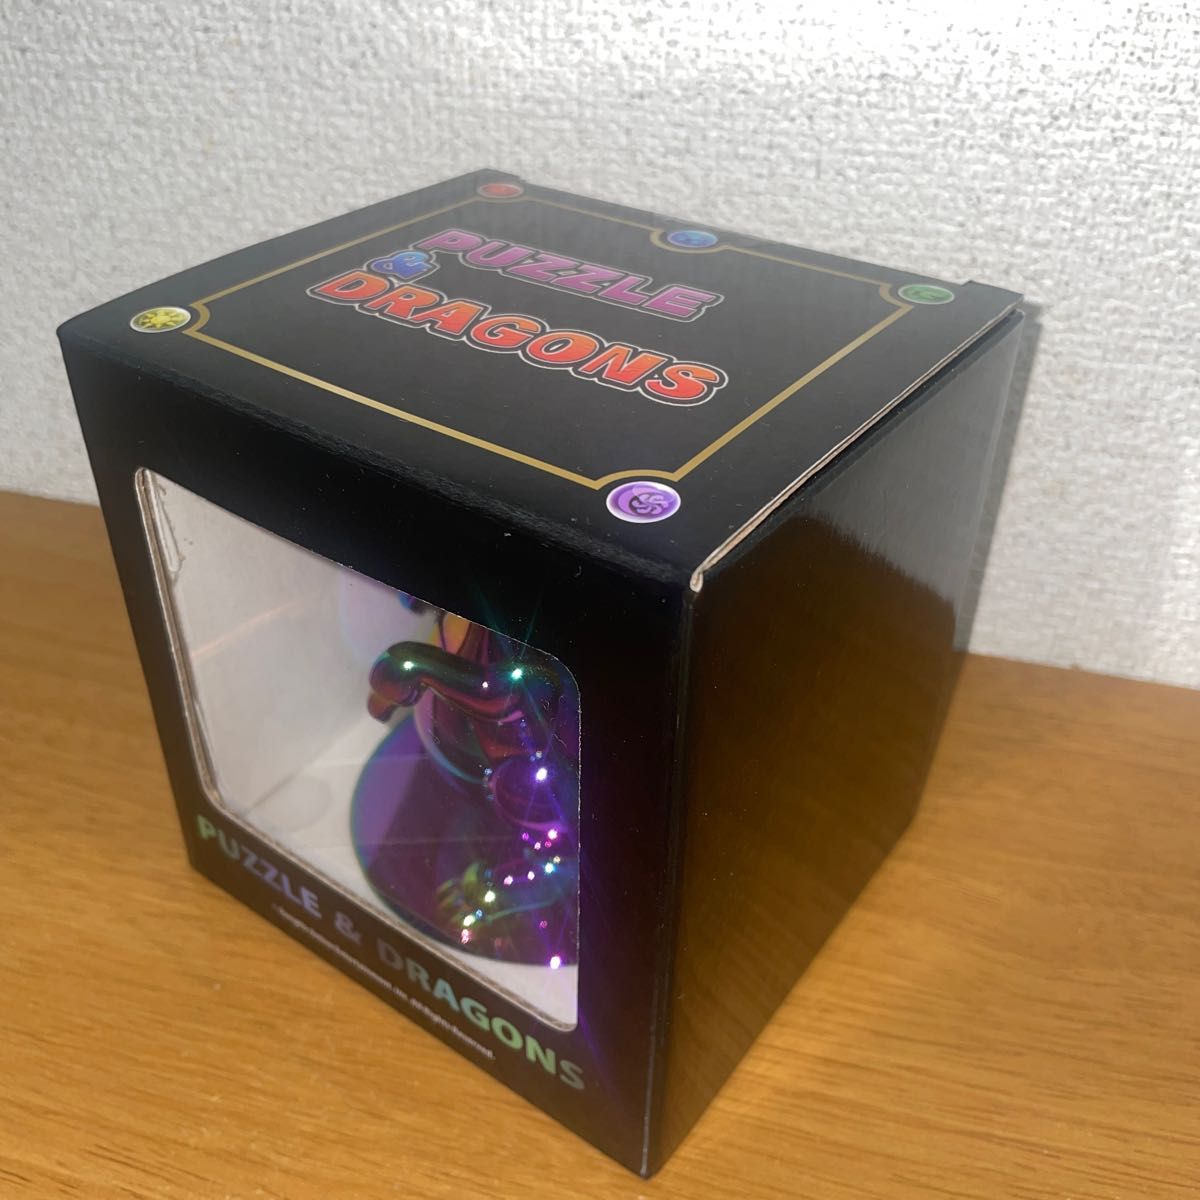 パズドラ パズル&ドラゴンズ 一番くじ A賞 ガチャドラ 10連ガチャドラ メタルフィギュア